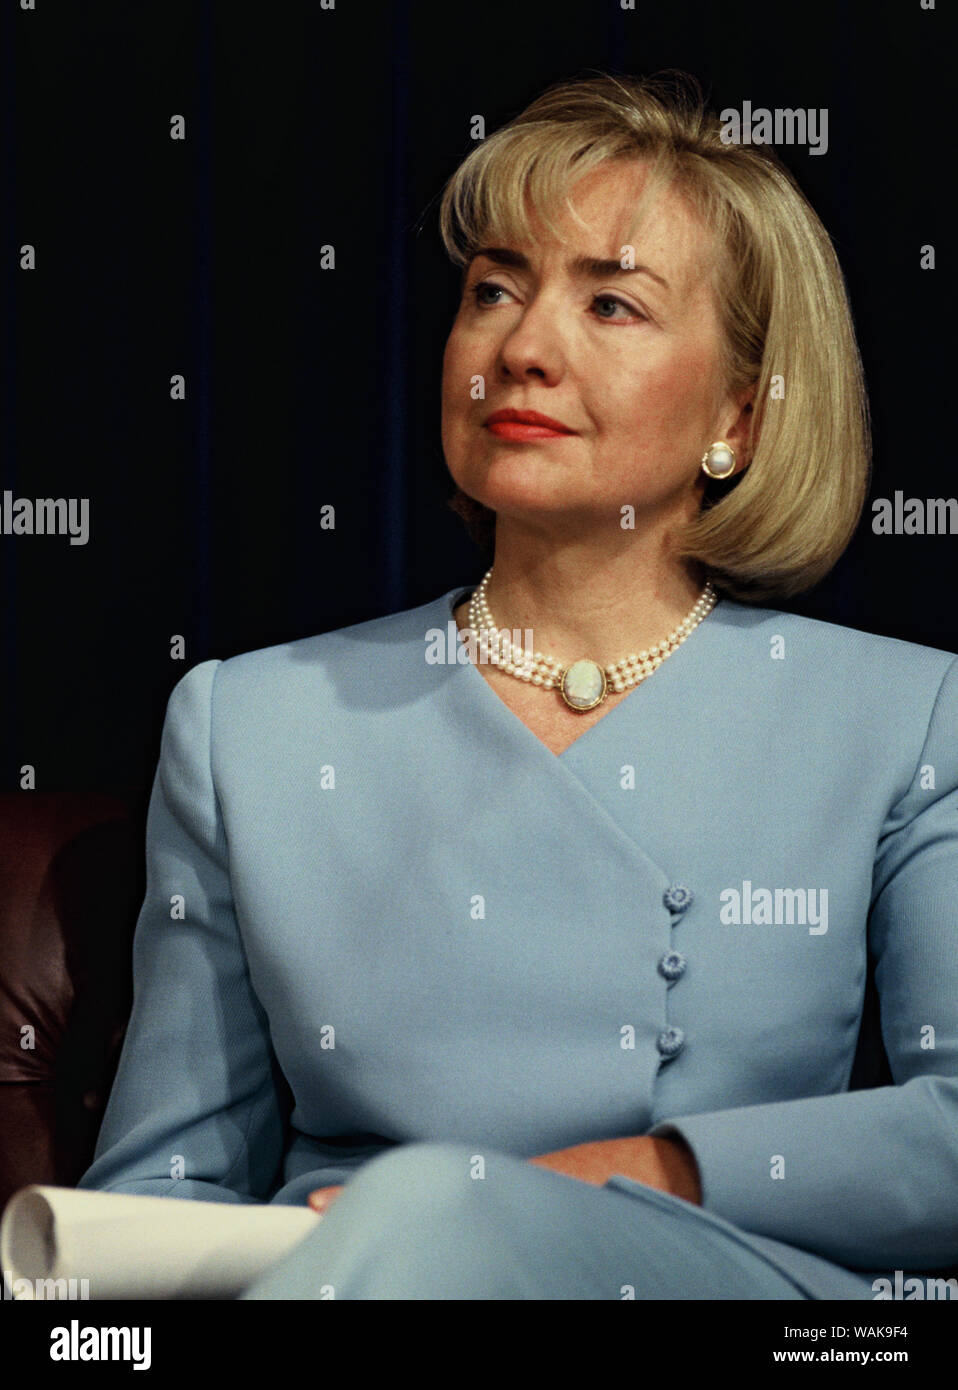 13 septembre, 1997. Washington, D.C. Première dame Hillary Rodham Clinton, lors d'un événement de santé annonçant l'étiquetage sur les prescriptions de l'enfant. Banque D'Images